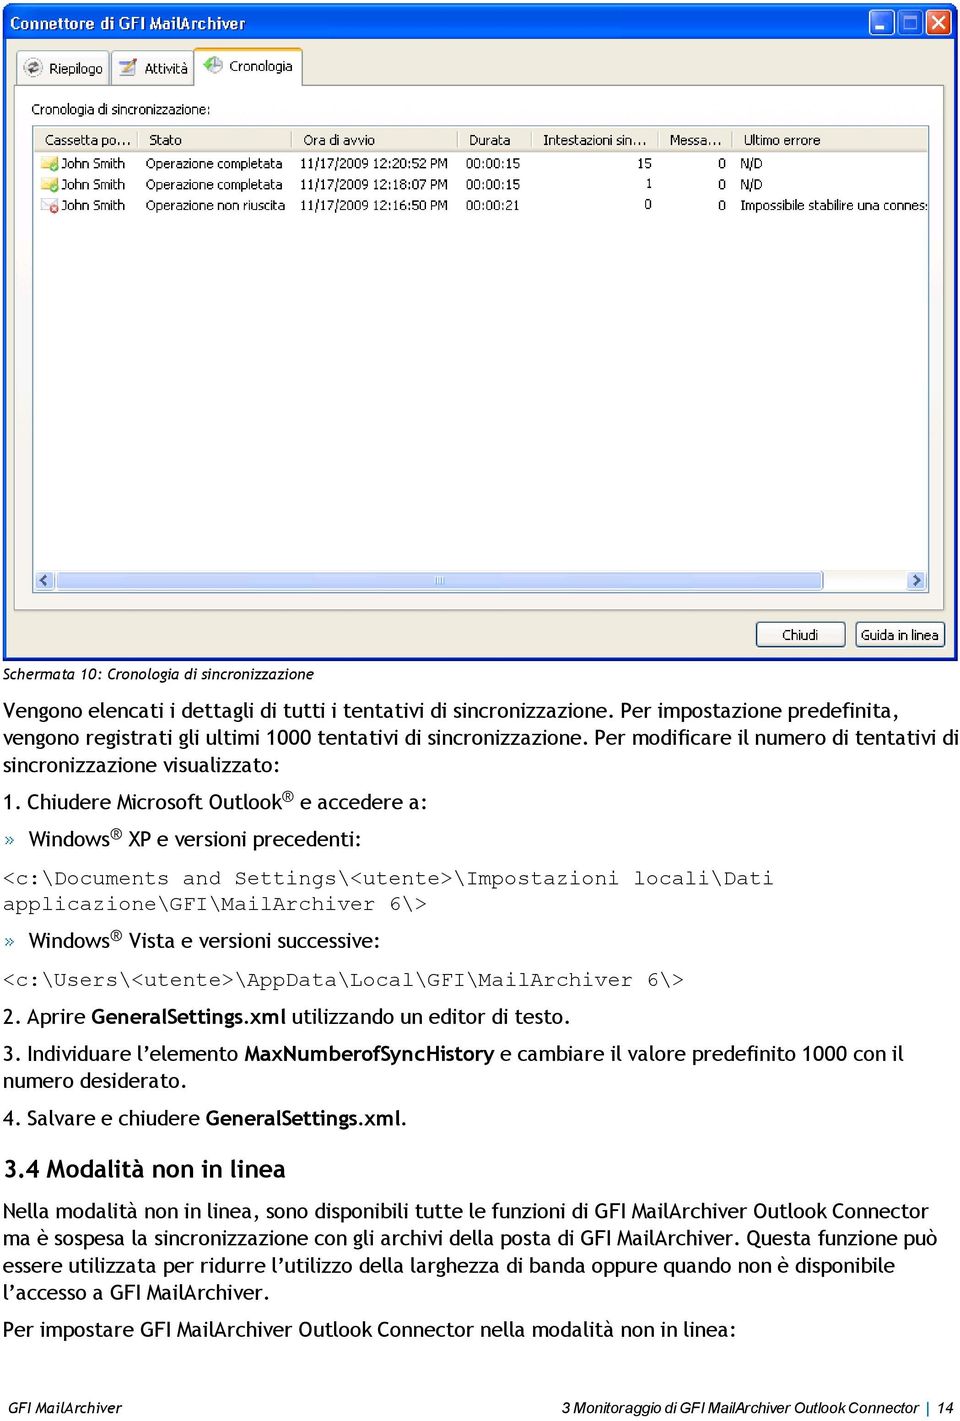 Chiudere Microsoft Outlook e accedere a: Windows XP e versioni precedenti: <c:\documents and Settings\<utente>\Impostazioni locali\dati applicazione\gfi\mailarchiver 6\> Windows Vista e versioni